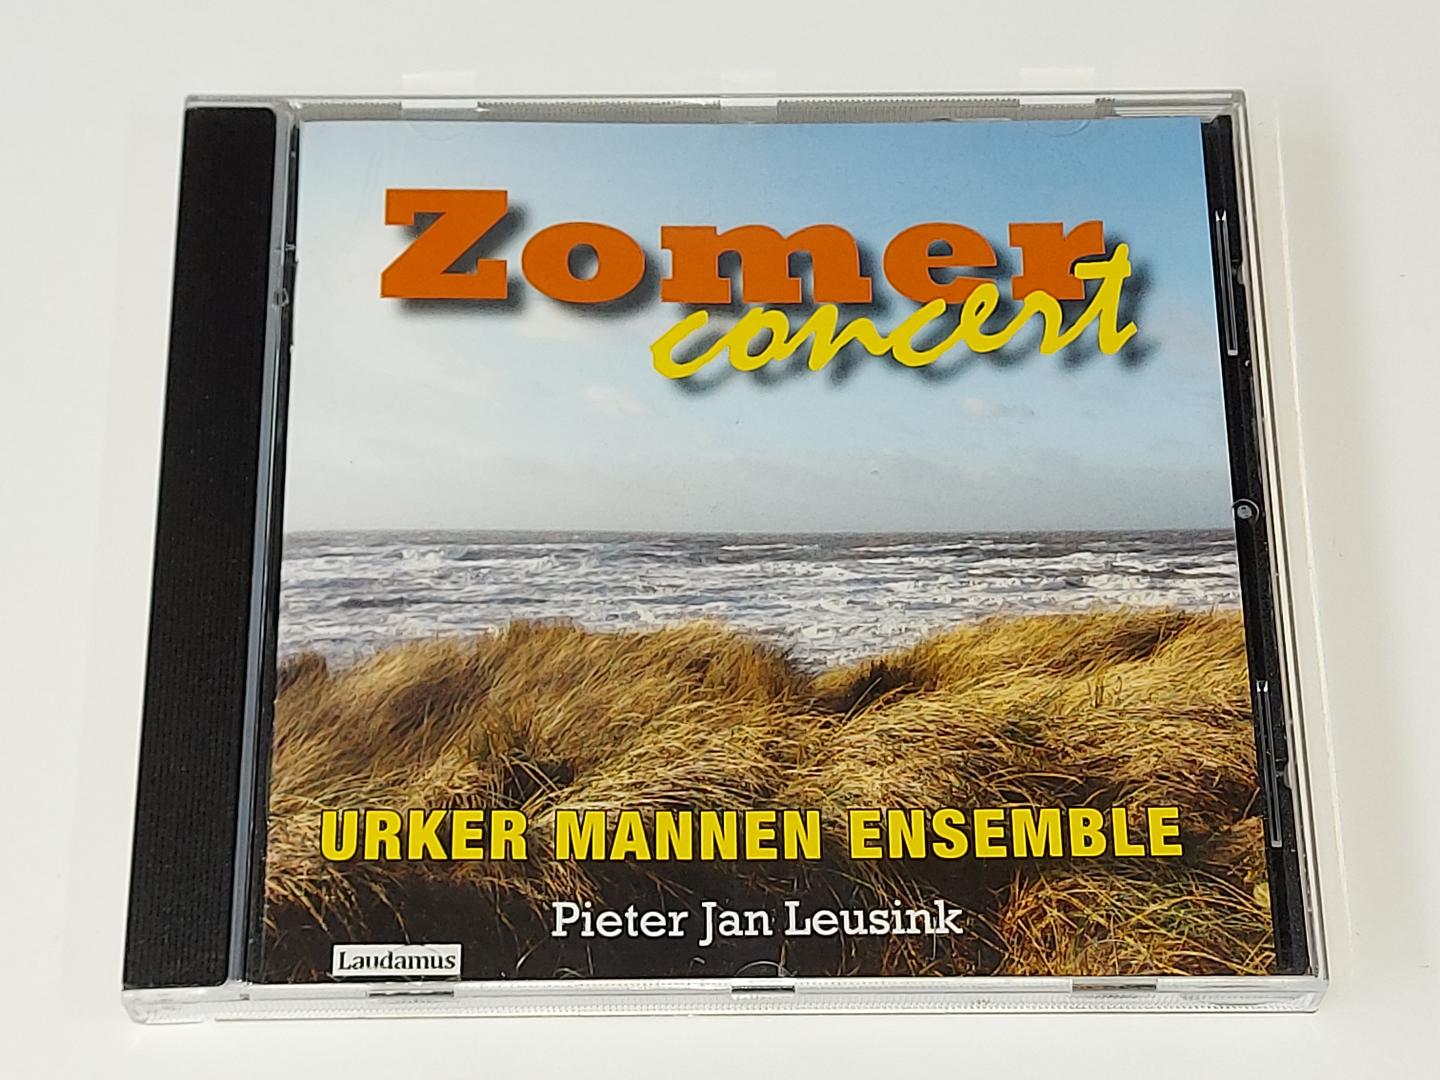 Urker Mannen Ensemble / Leusink, Pieter Jan - Zomerconcert